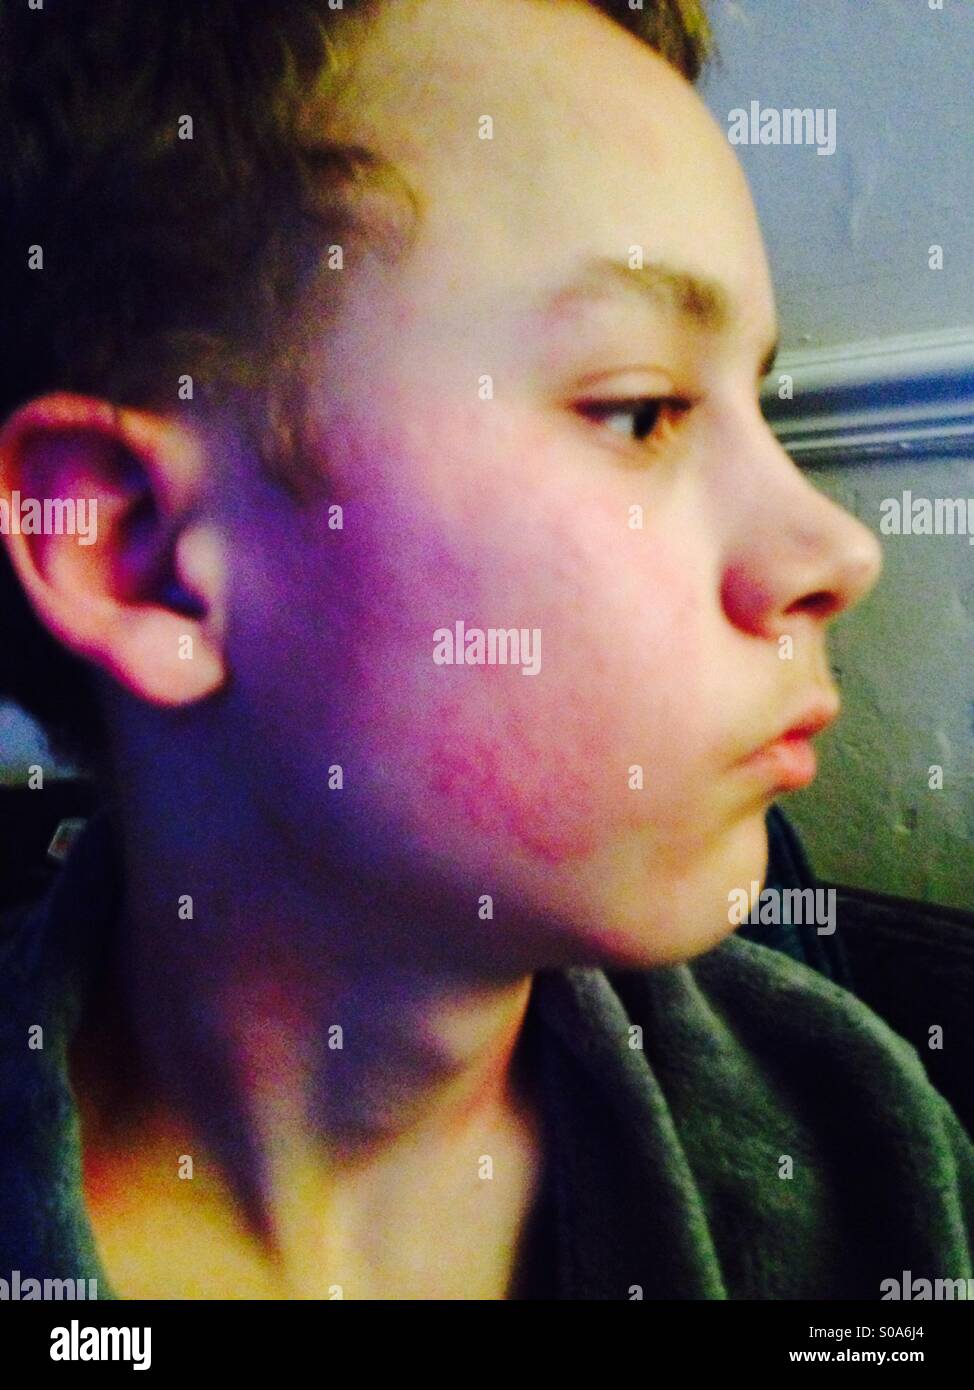 Boy with rash Stock Photo